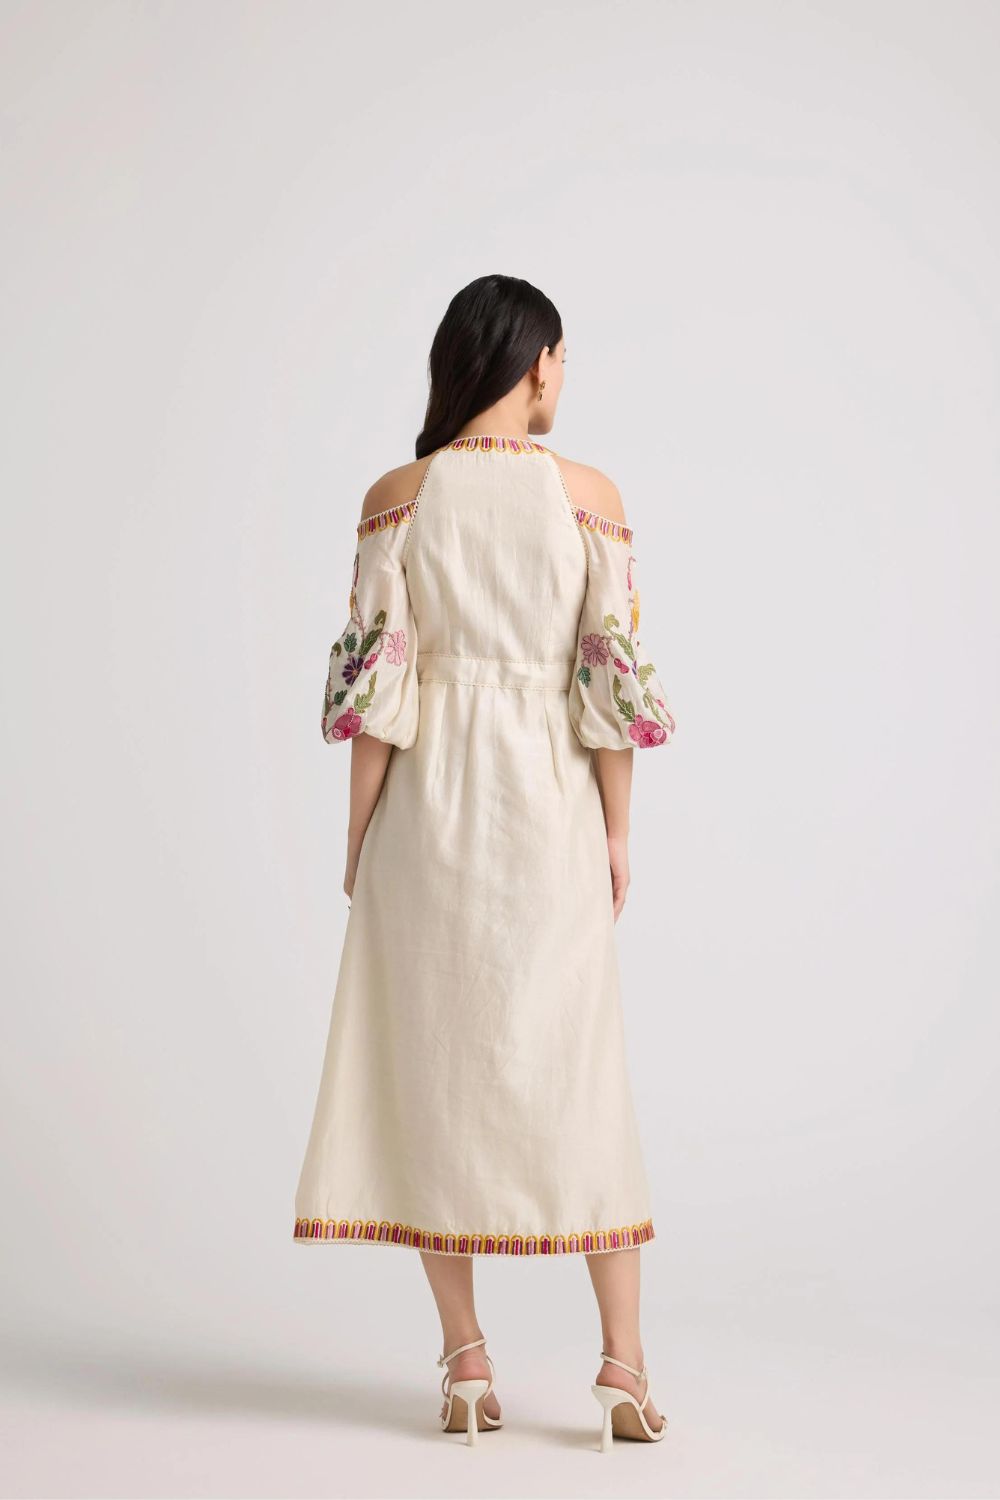 Ivory Floral Cold Shoulder Midi Dress